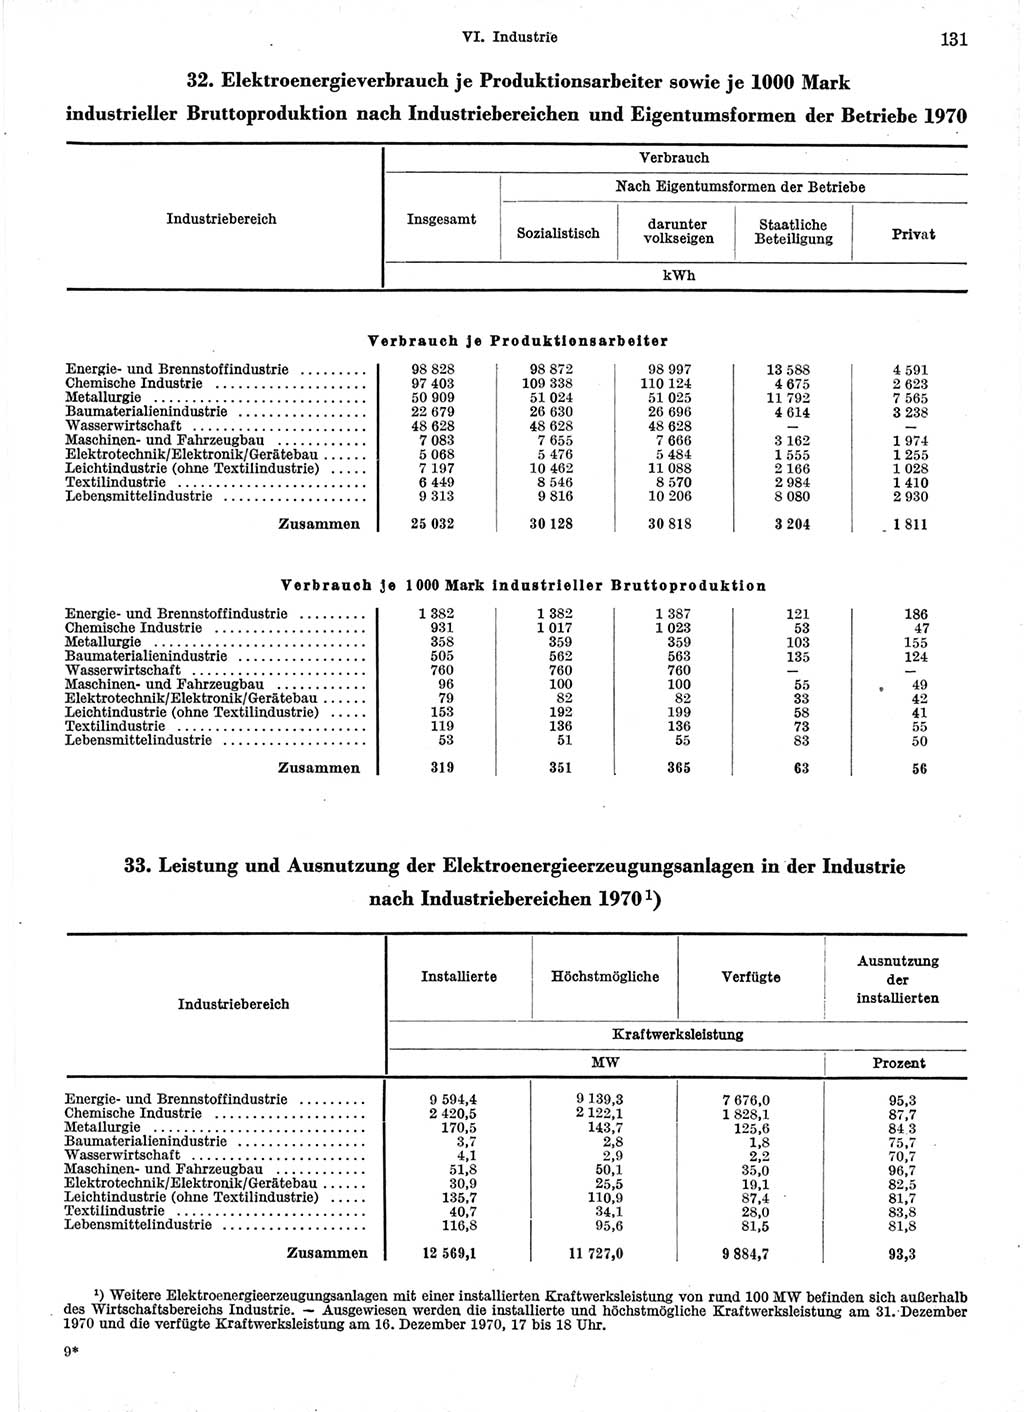 Statistisches Jahrbuch der Deutschen Demokratischen Republik (DDR) 1971, Seite 131 (Stat. Jb. DDR 1971, S. 131)